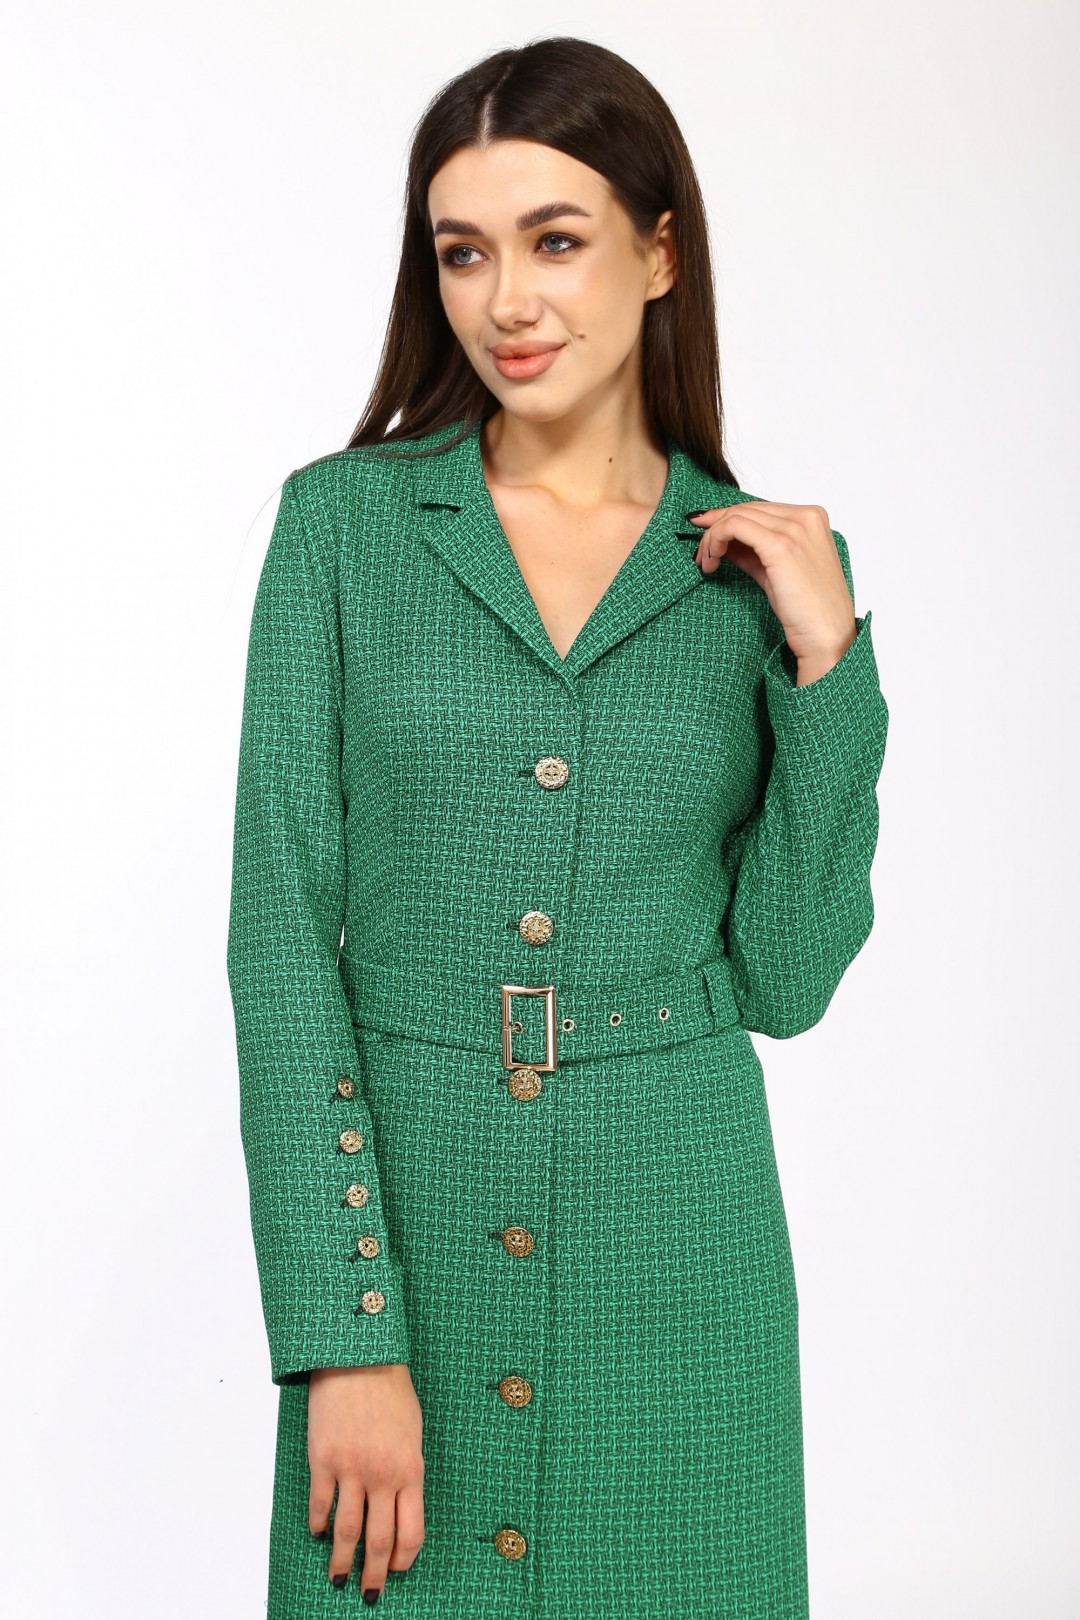 Платье Карина Делюкс М-9958 зеленый